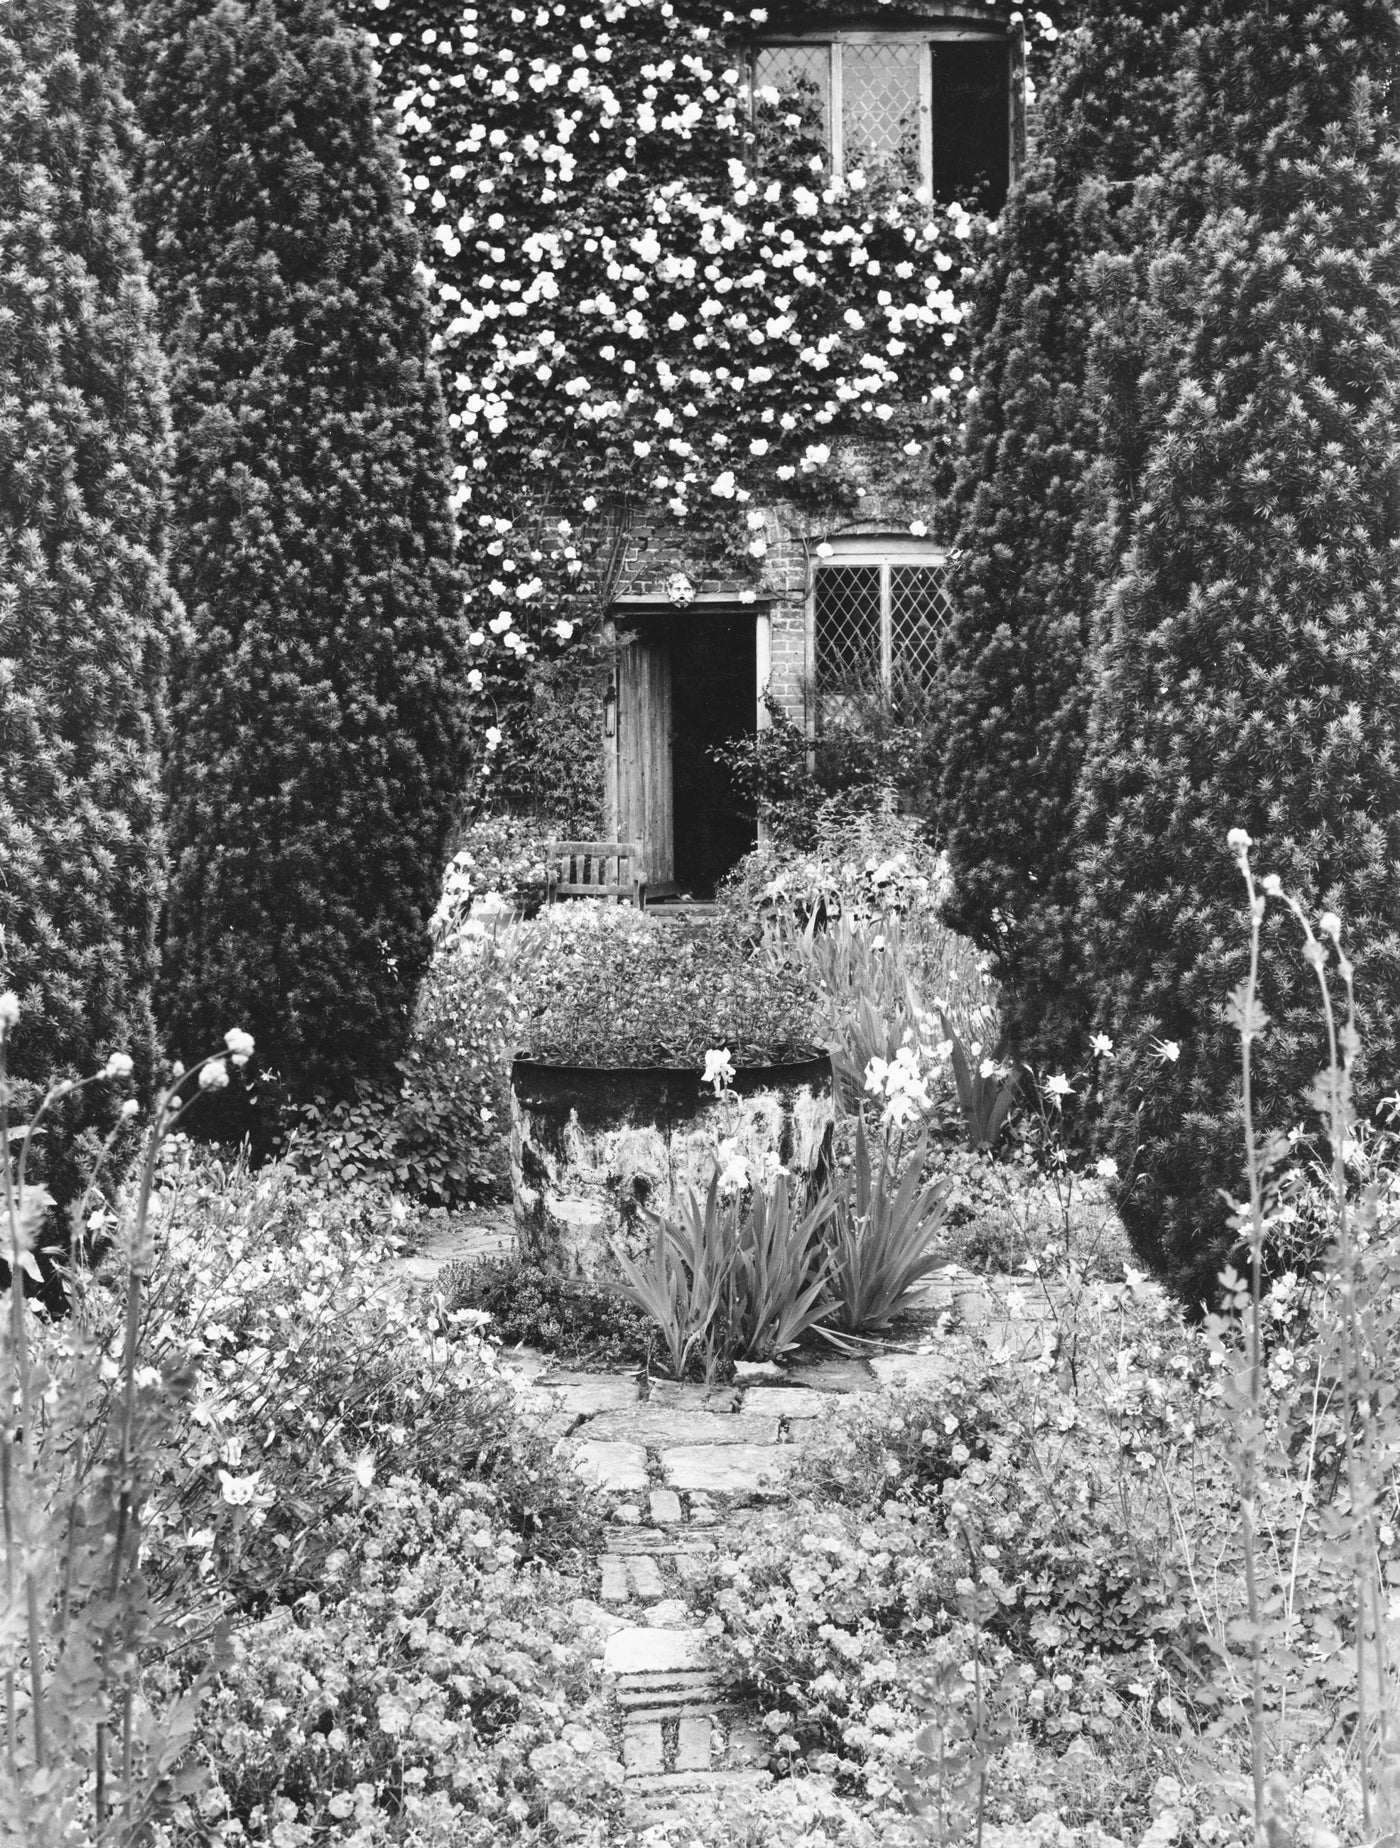 Puriri Lane | Sissinghurst | The Creation Of A Garden 